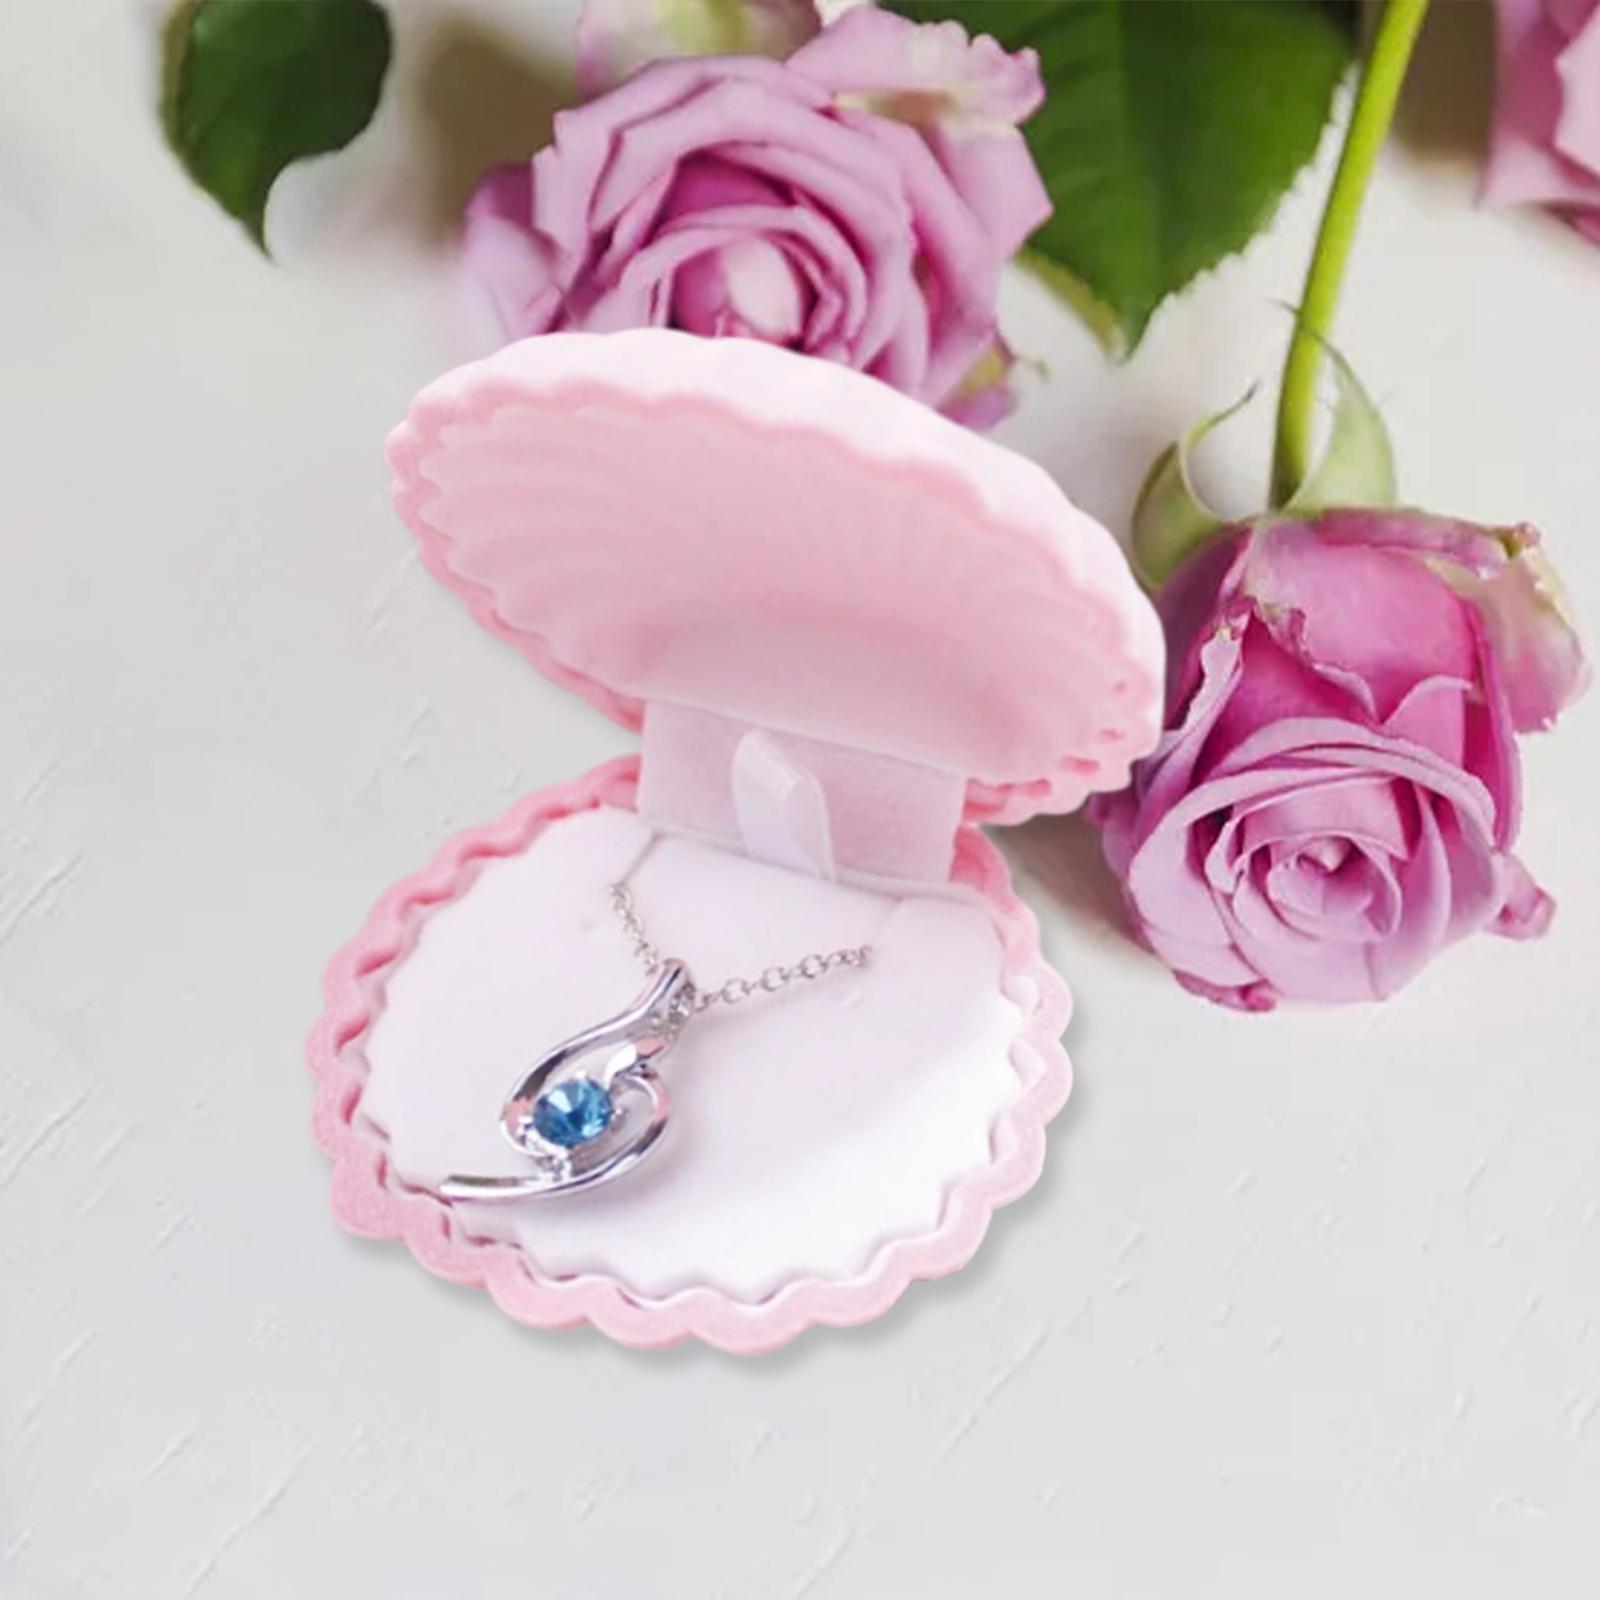 Jewelry Box Decorative Elegant Shell Shape for Wedding Engagement Decoration E